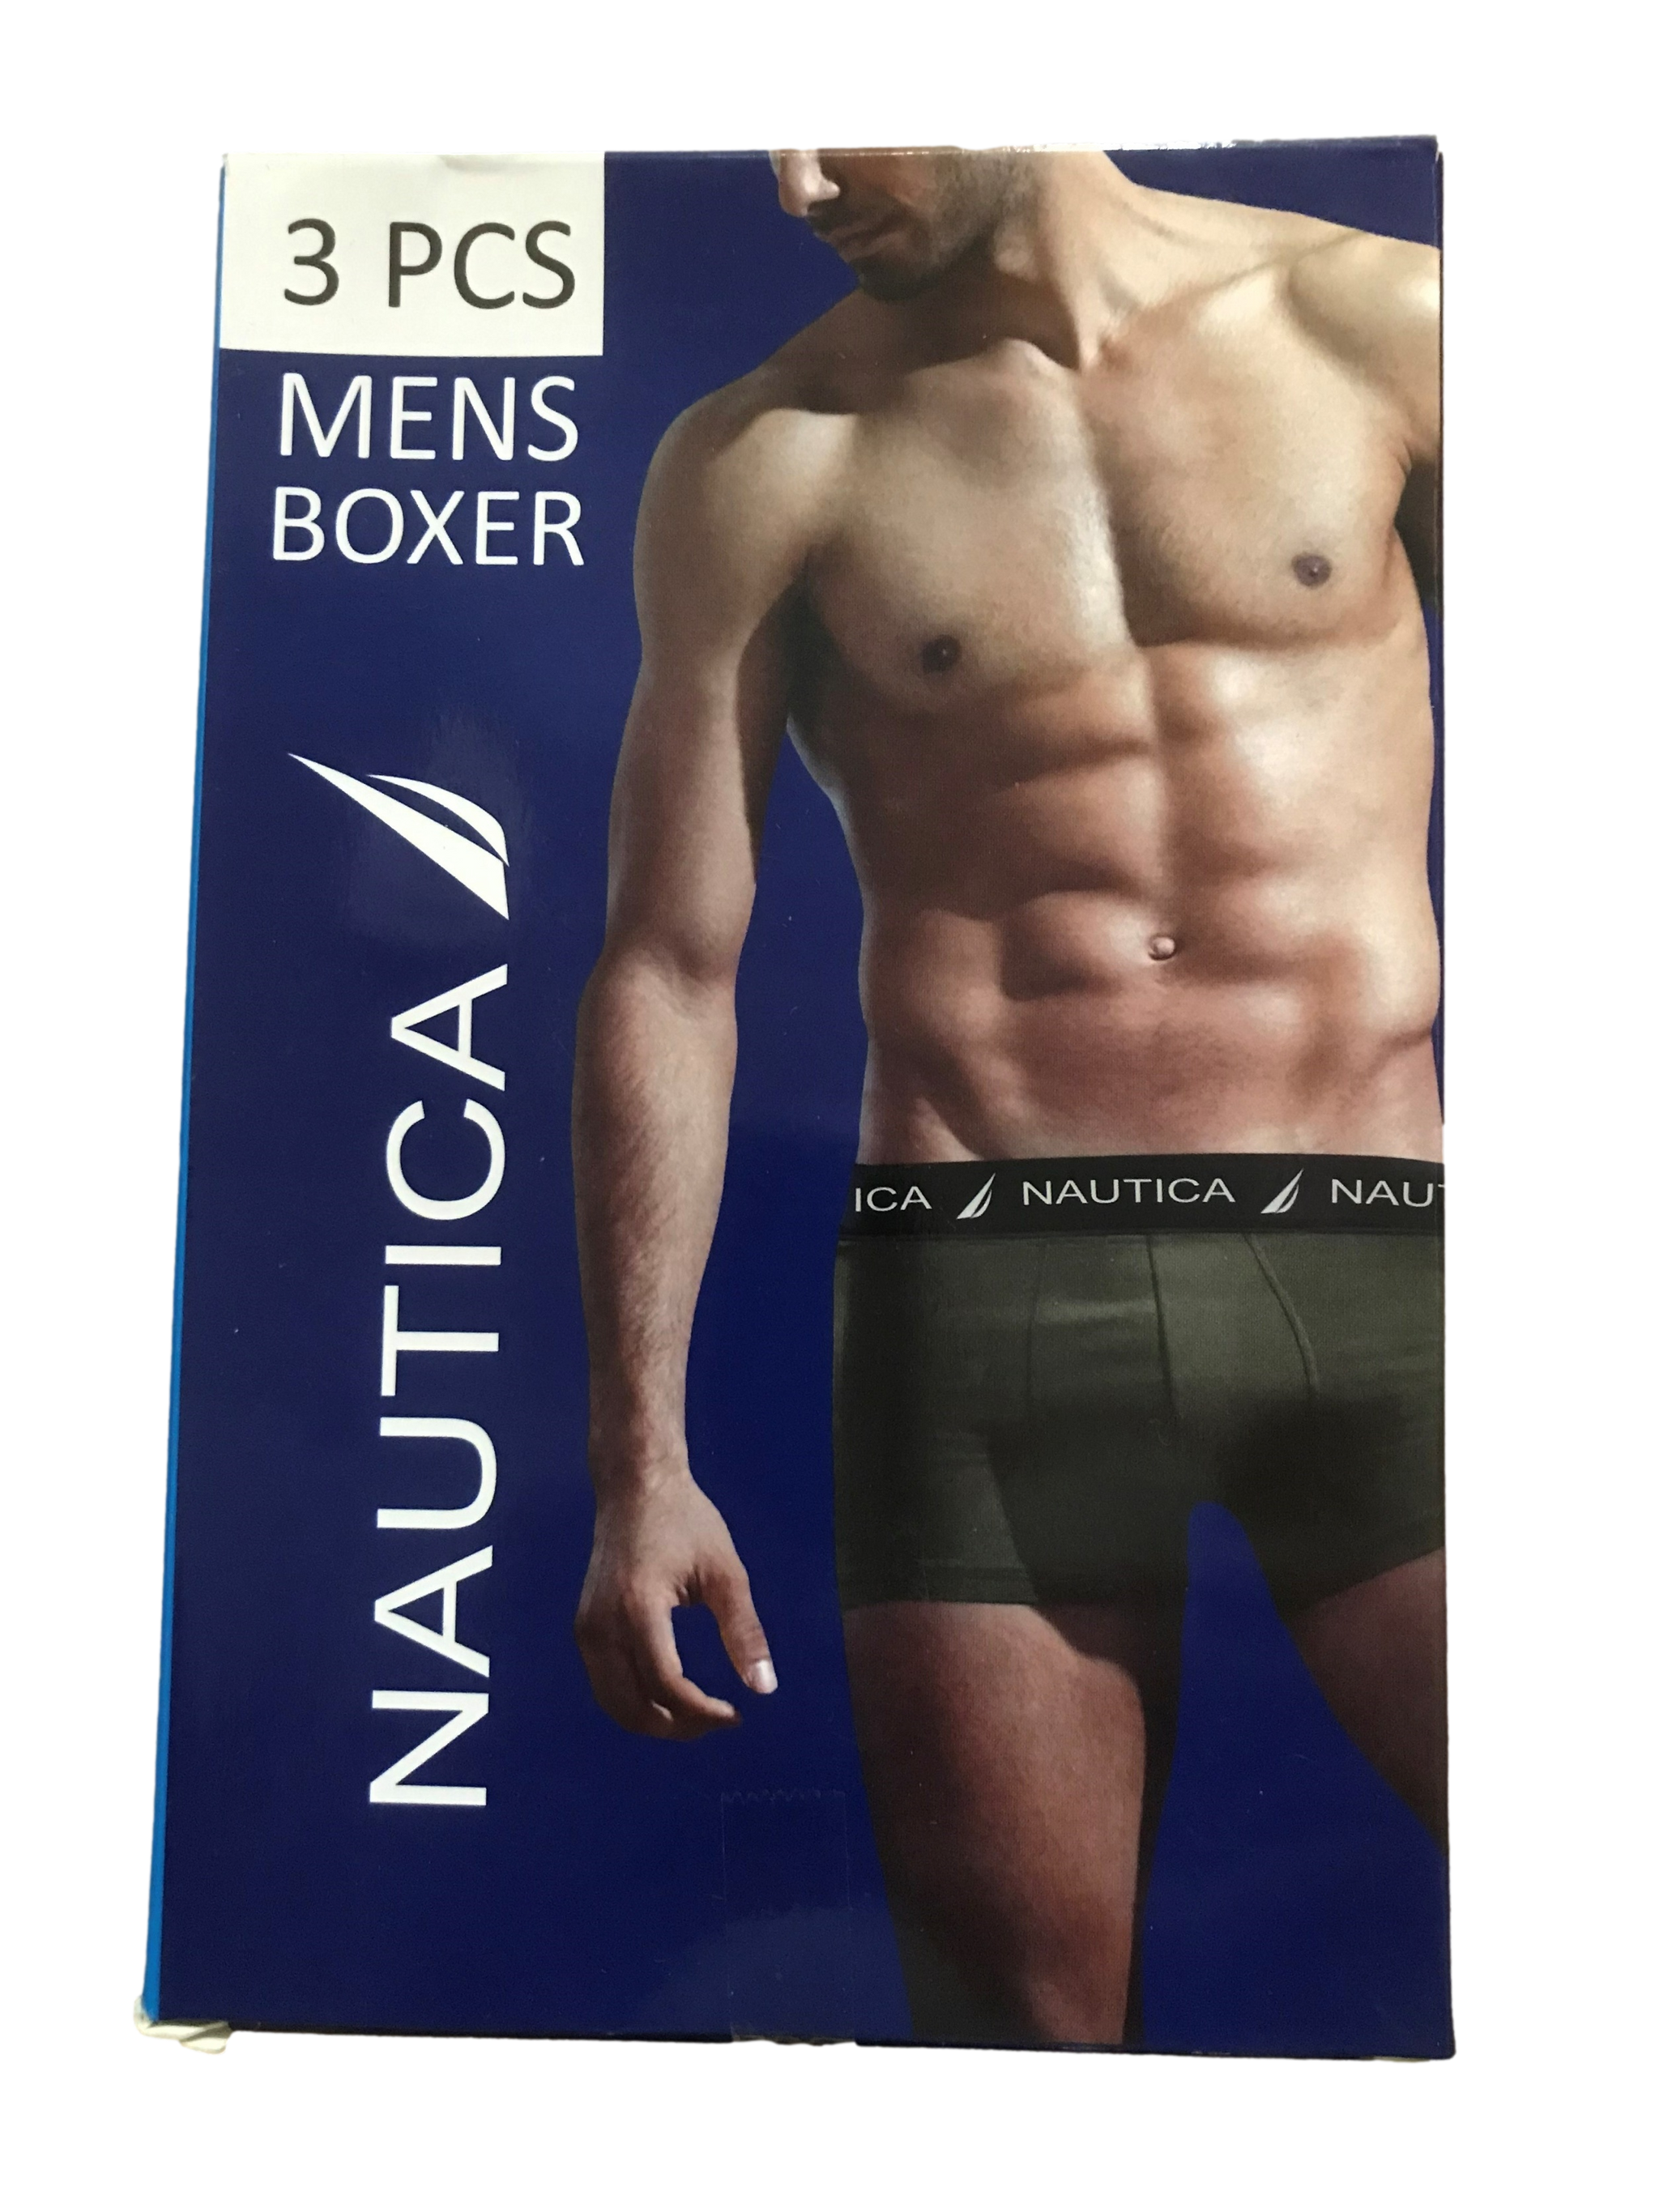 Nautica Underwear 